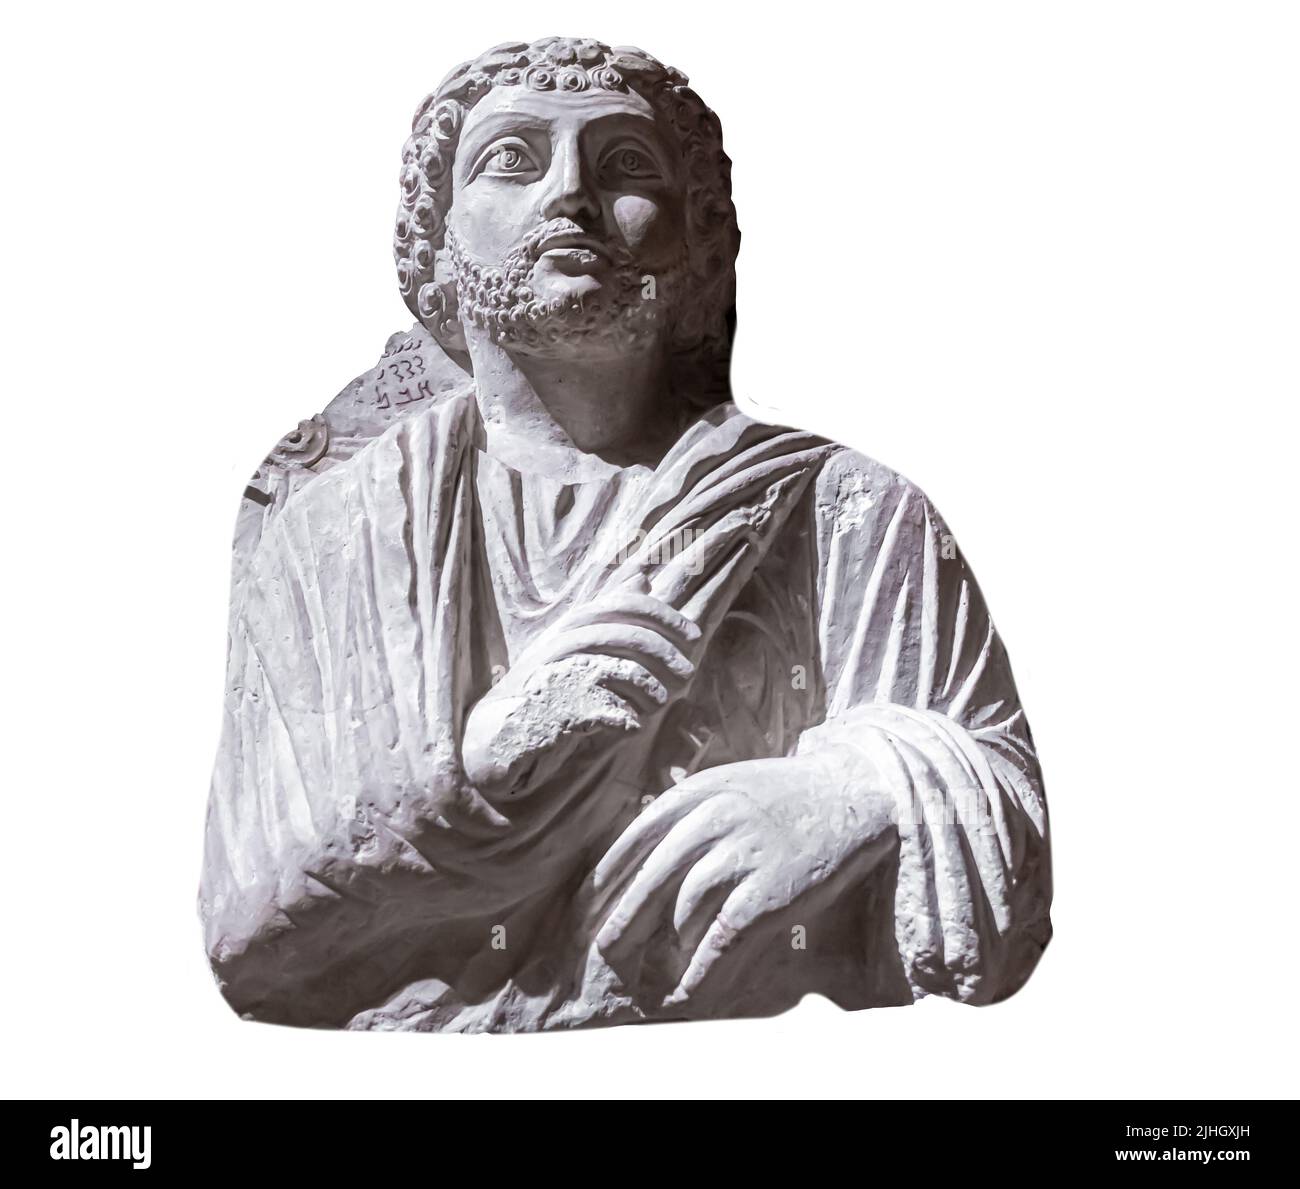 Palmyrene le buste de secours funéraire d'un homme - Palmyra - milieu du 2nd siècle, 155 A.D. - calcaire Banque D'Images